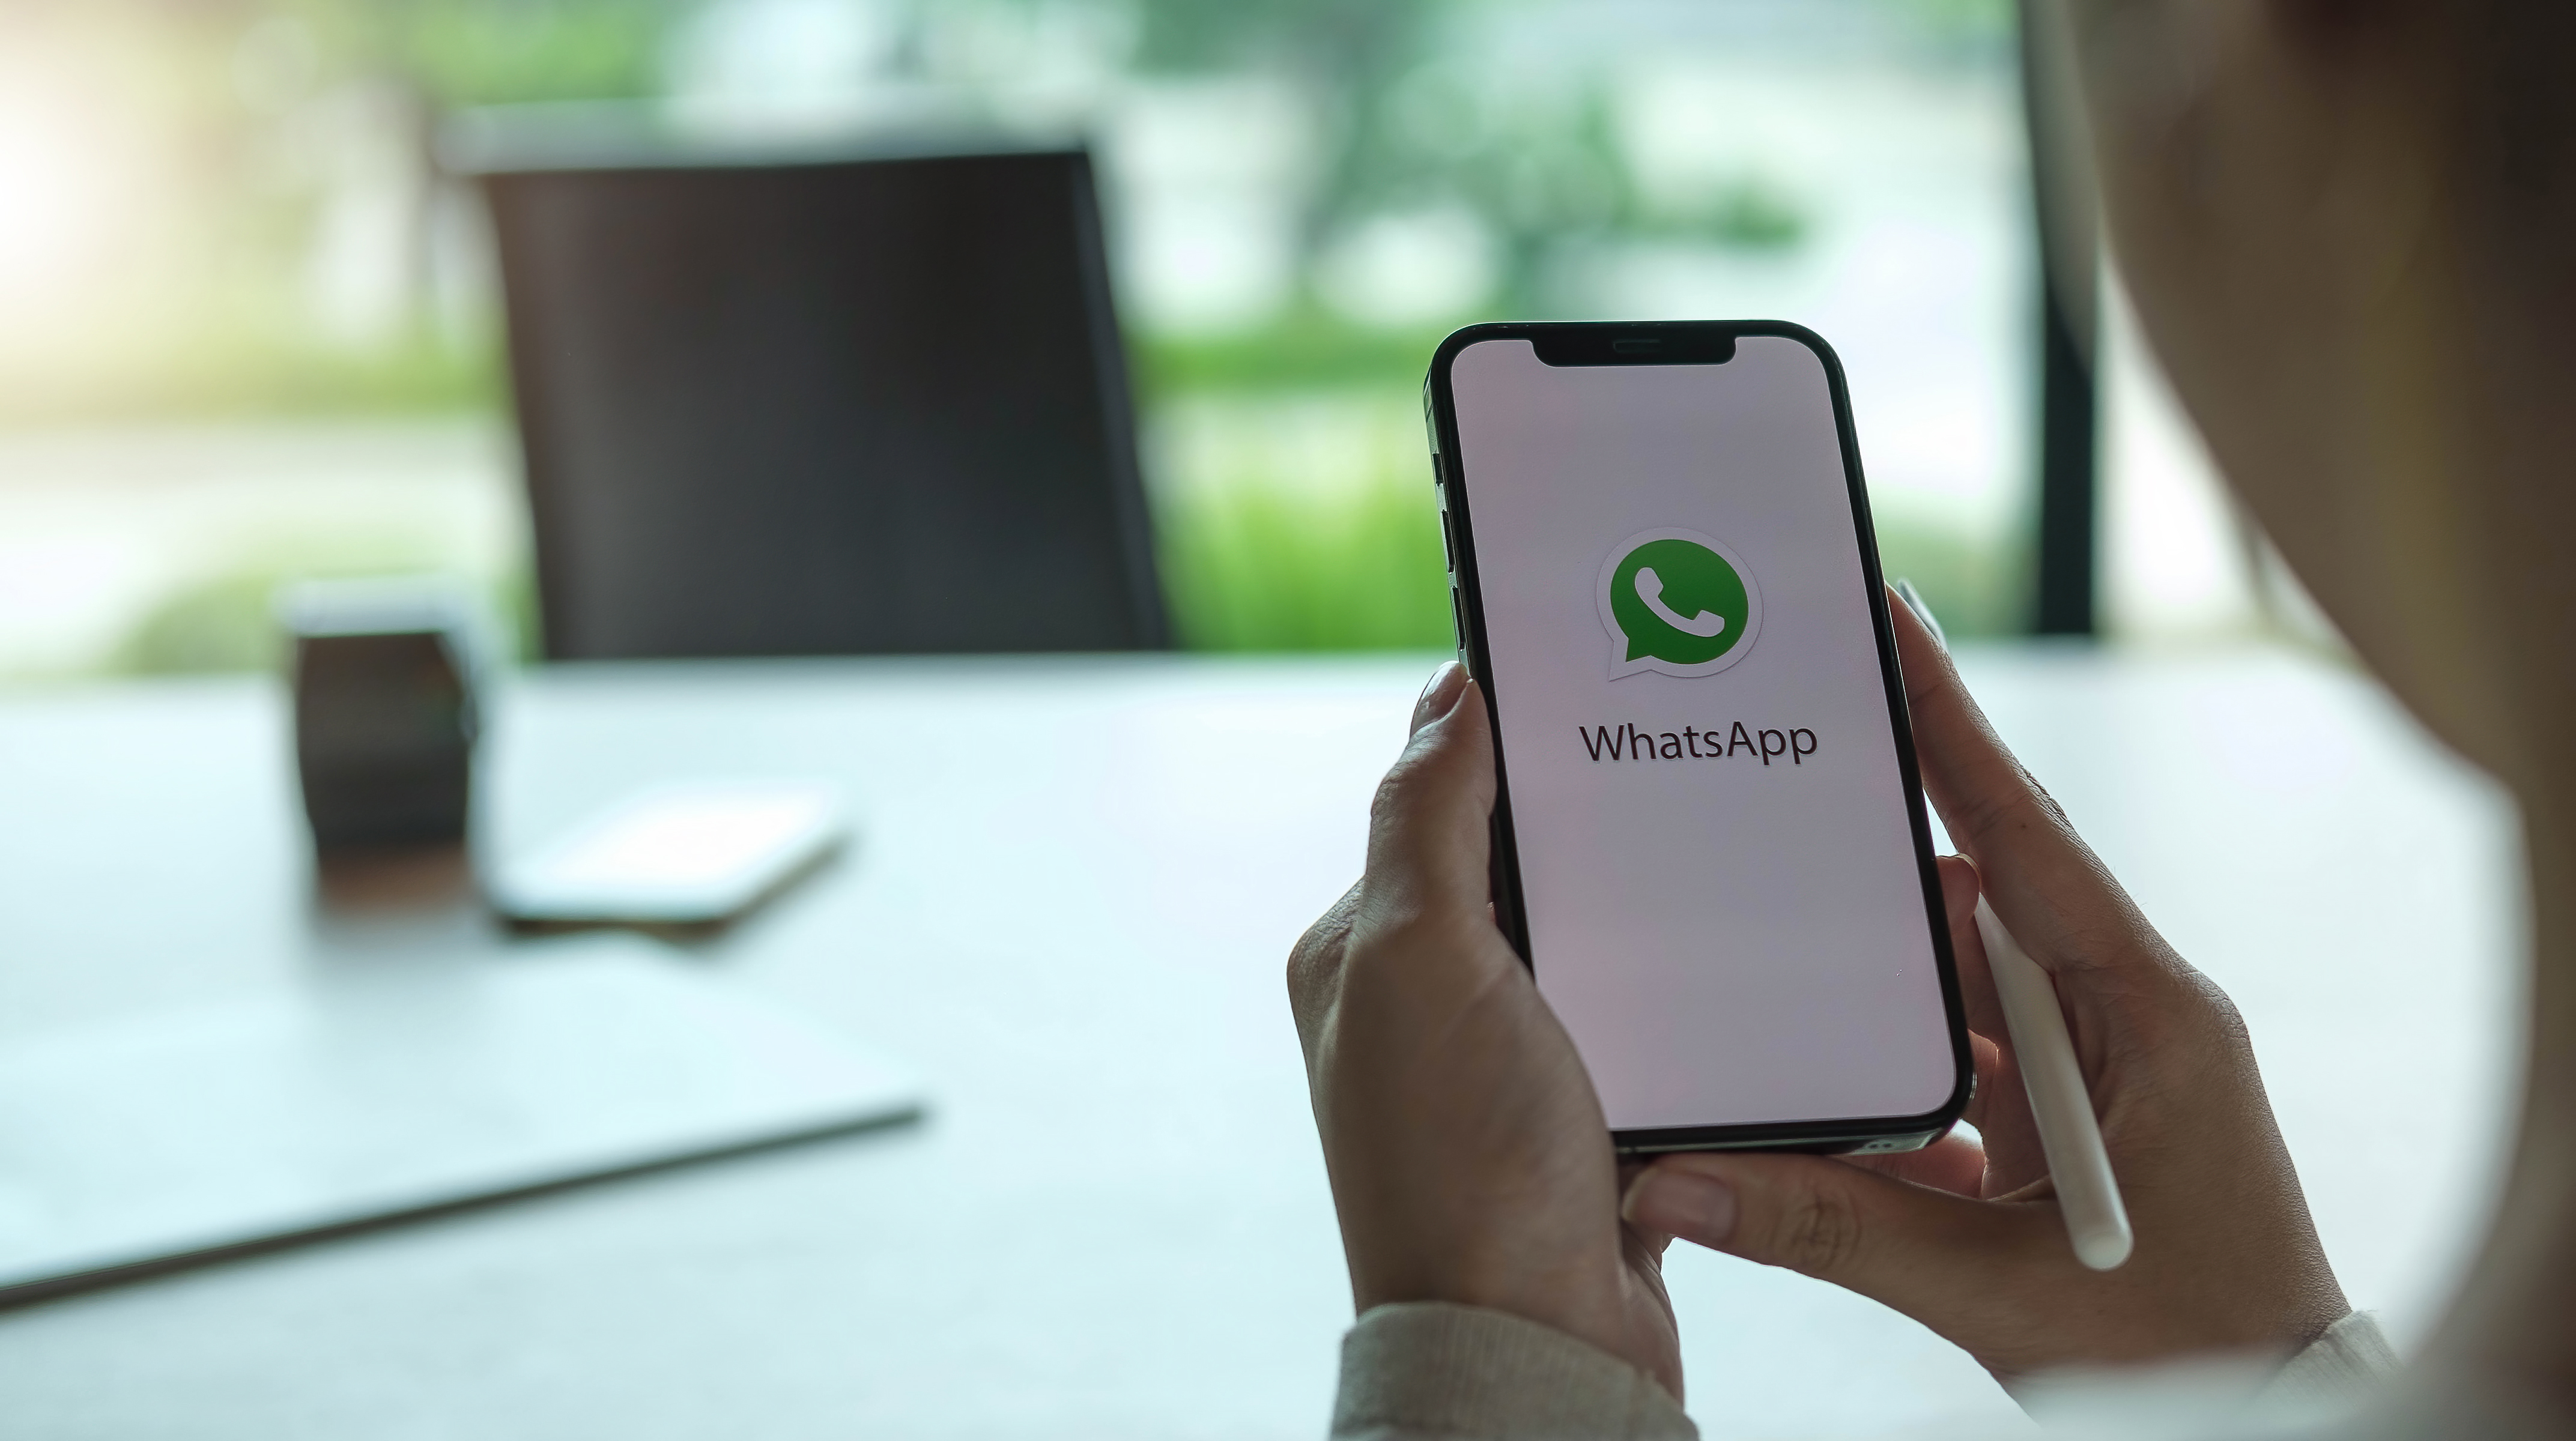 Vijf slimme manieren om WhatsApp te gebruiken voor jouw bedrijf [met handige guide voor WhatsApp kanalen]